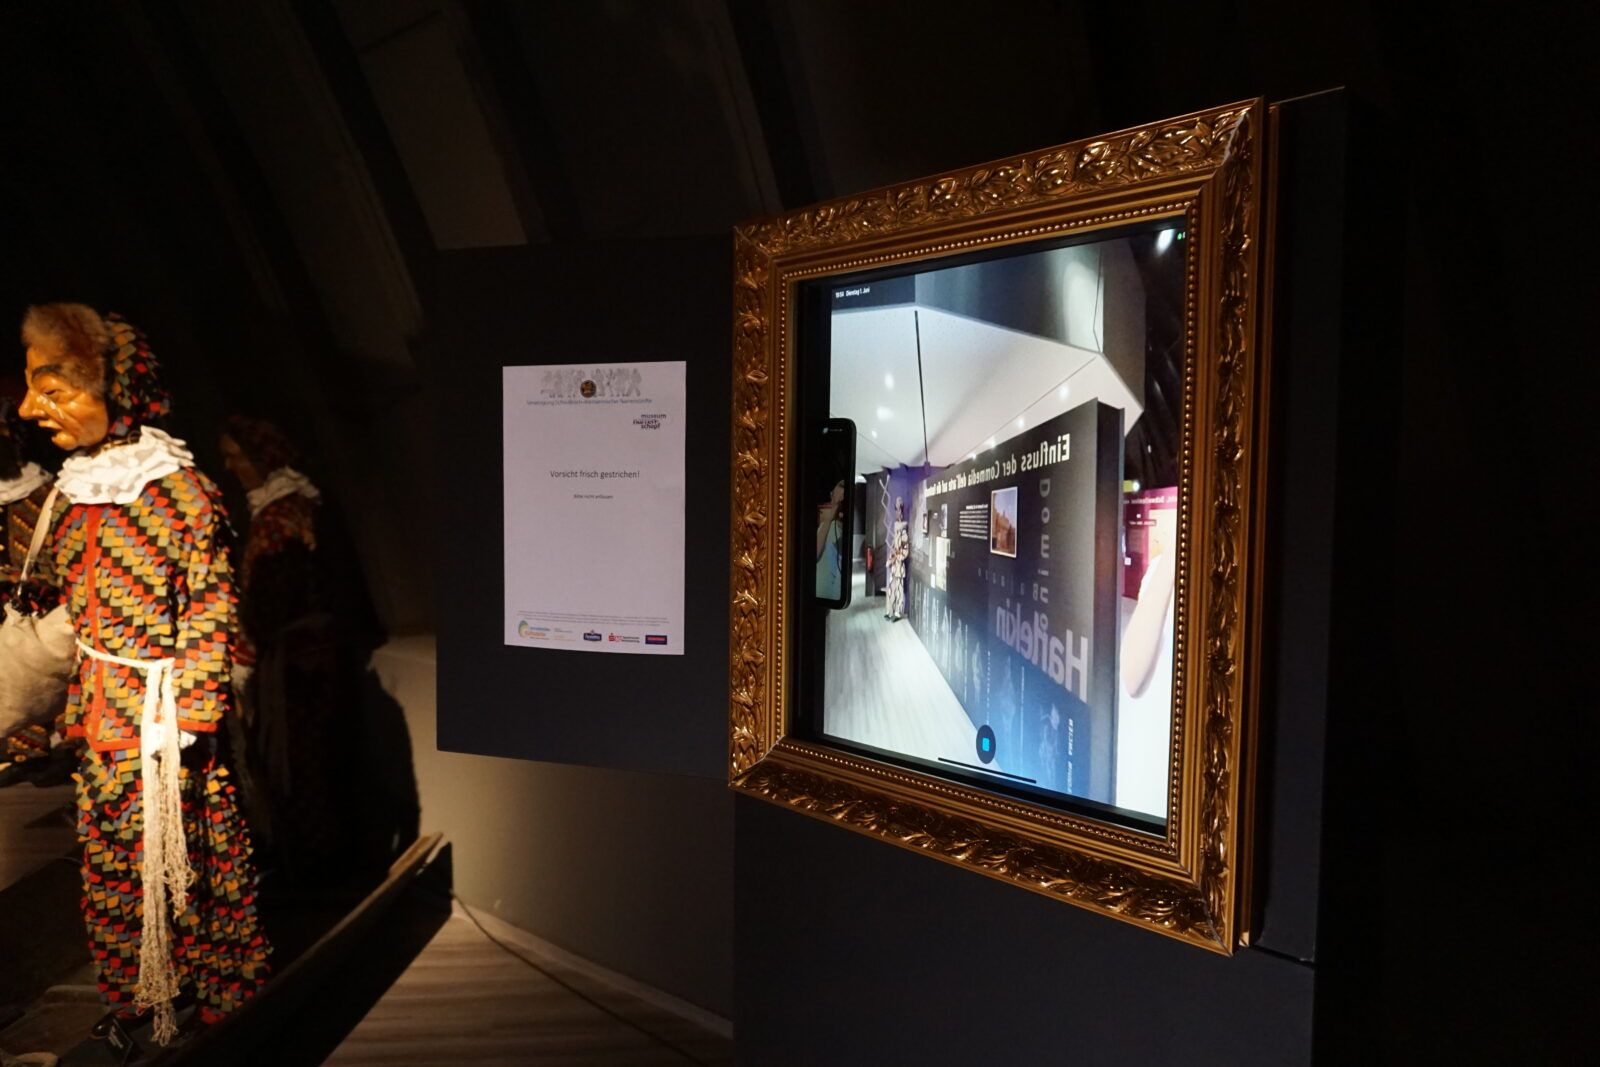 Die fertige AR-Anwendung „Narrenspiegel“ im Ausstellungsraum. Der Monitor ist integriert in einem historischen Bilderrahmen.